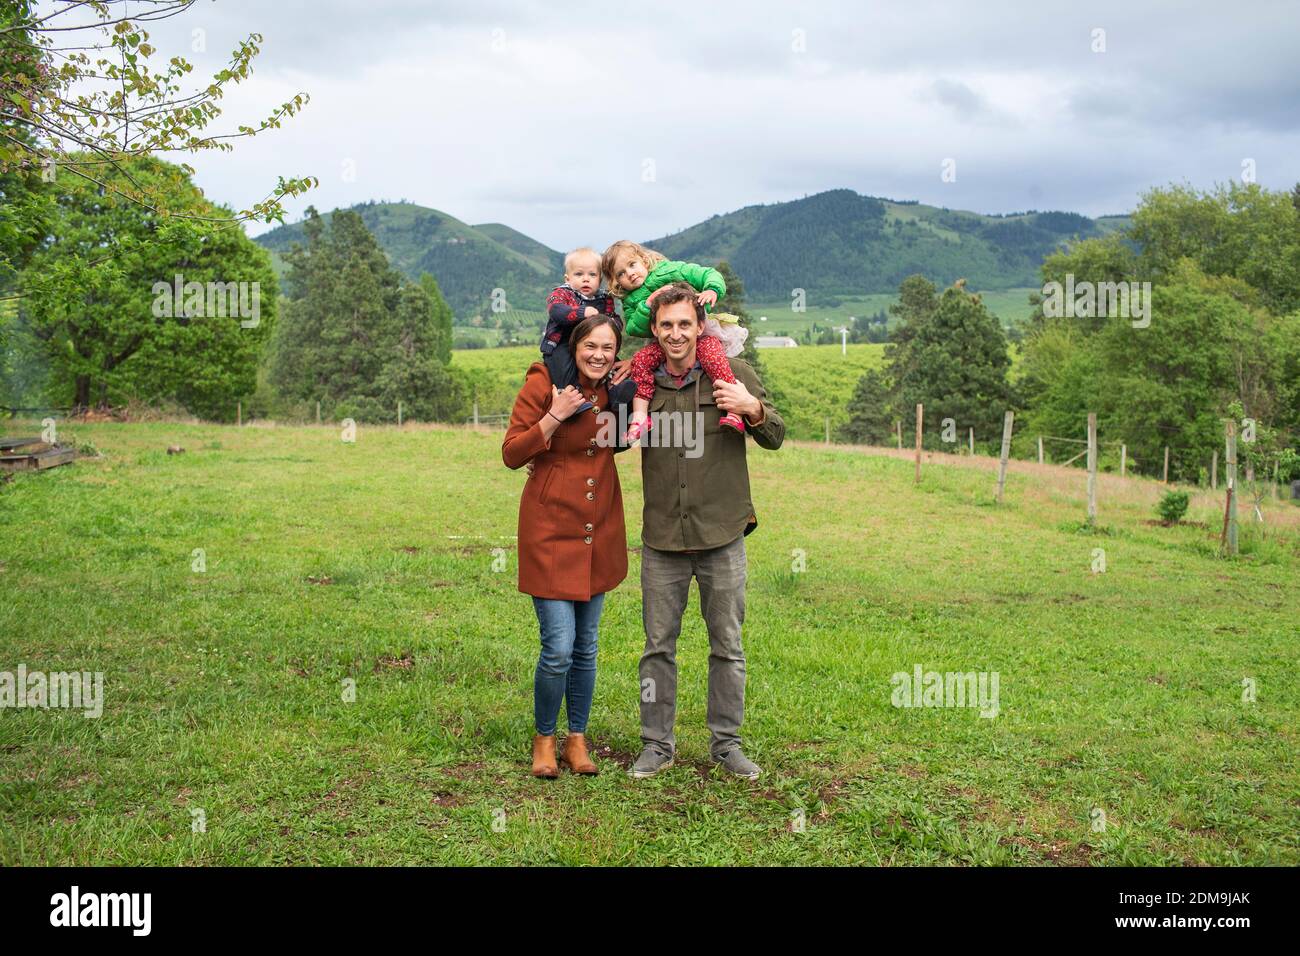 Un ritratto di una famiglia di 4 persone nel cortile Di una casa in America rurale Foto Stock